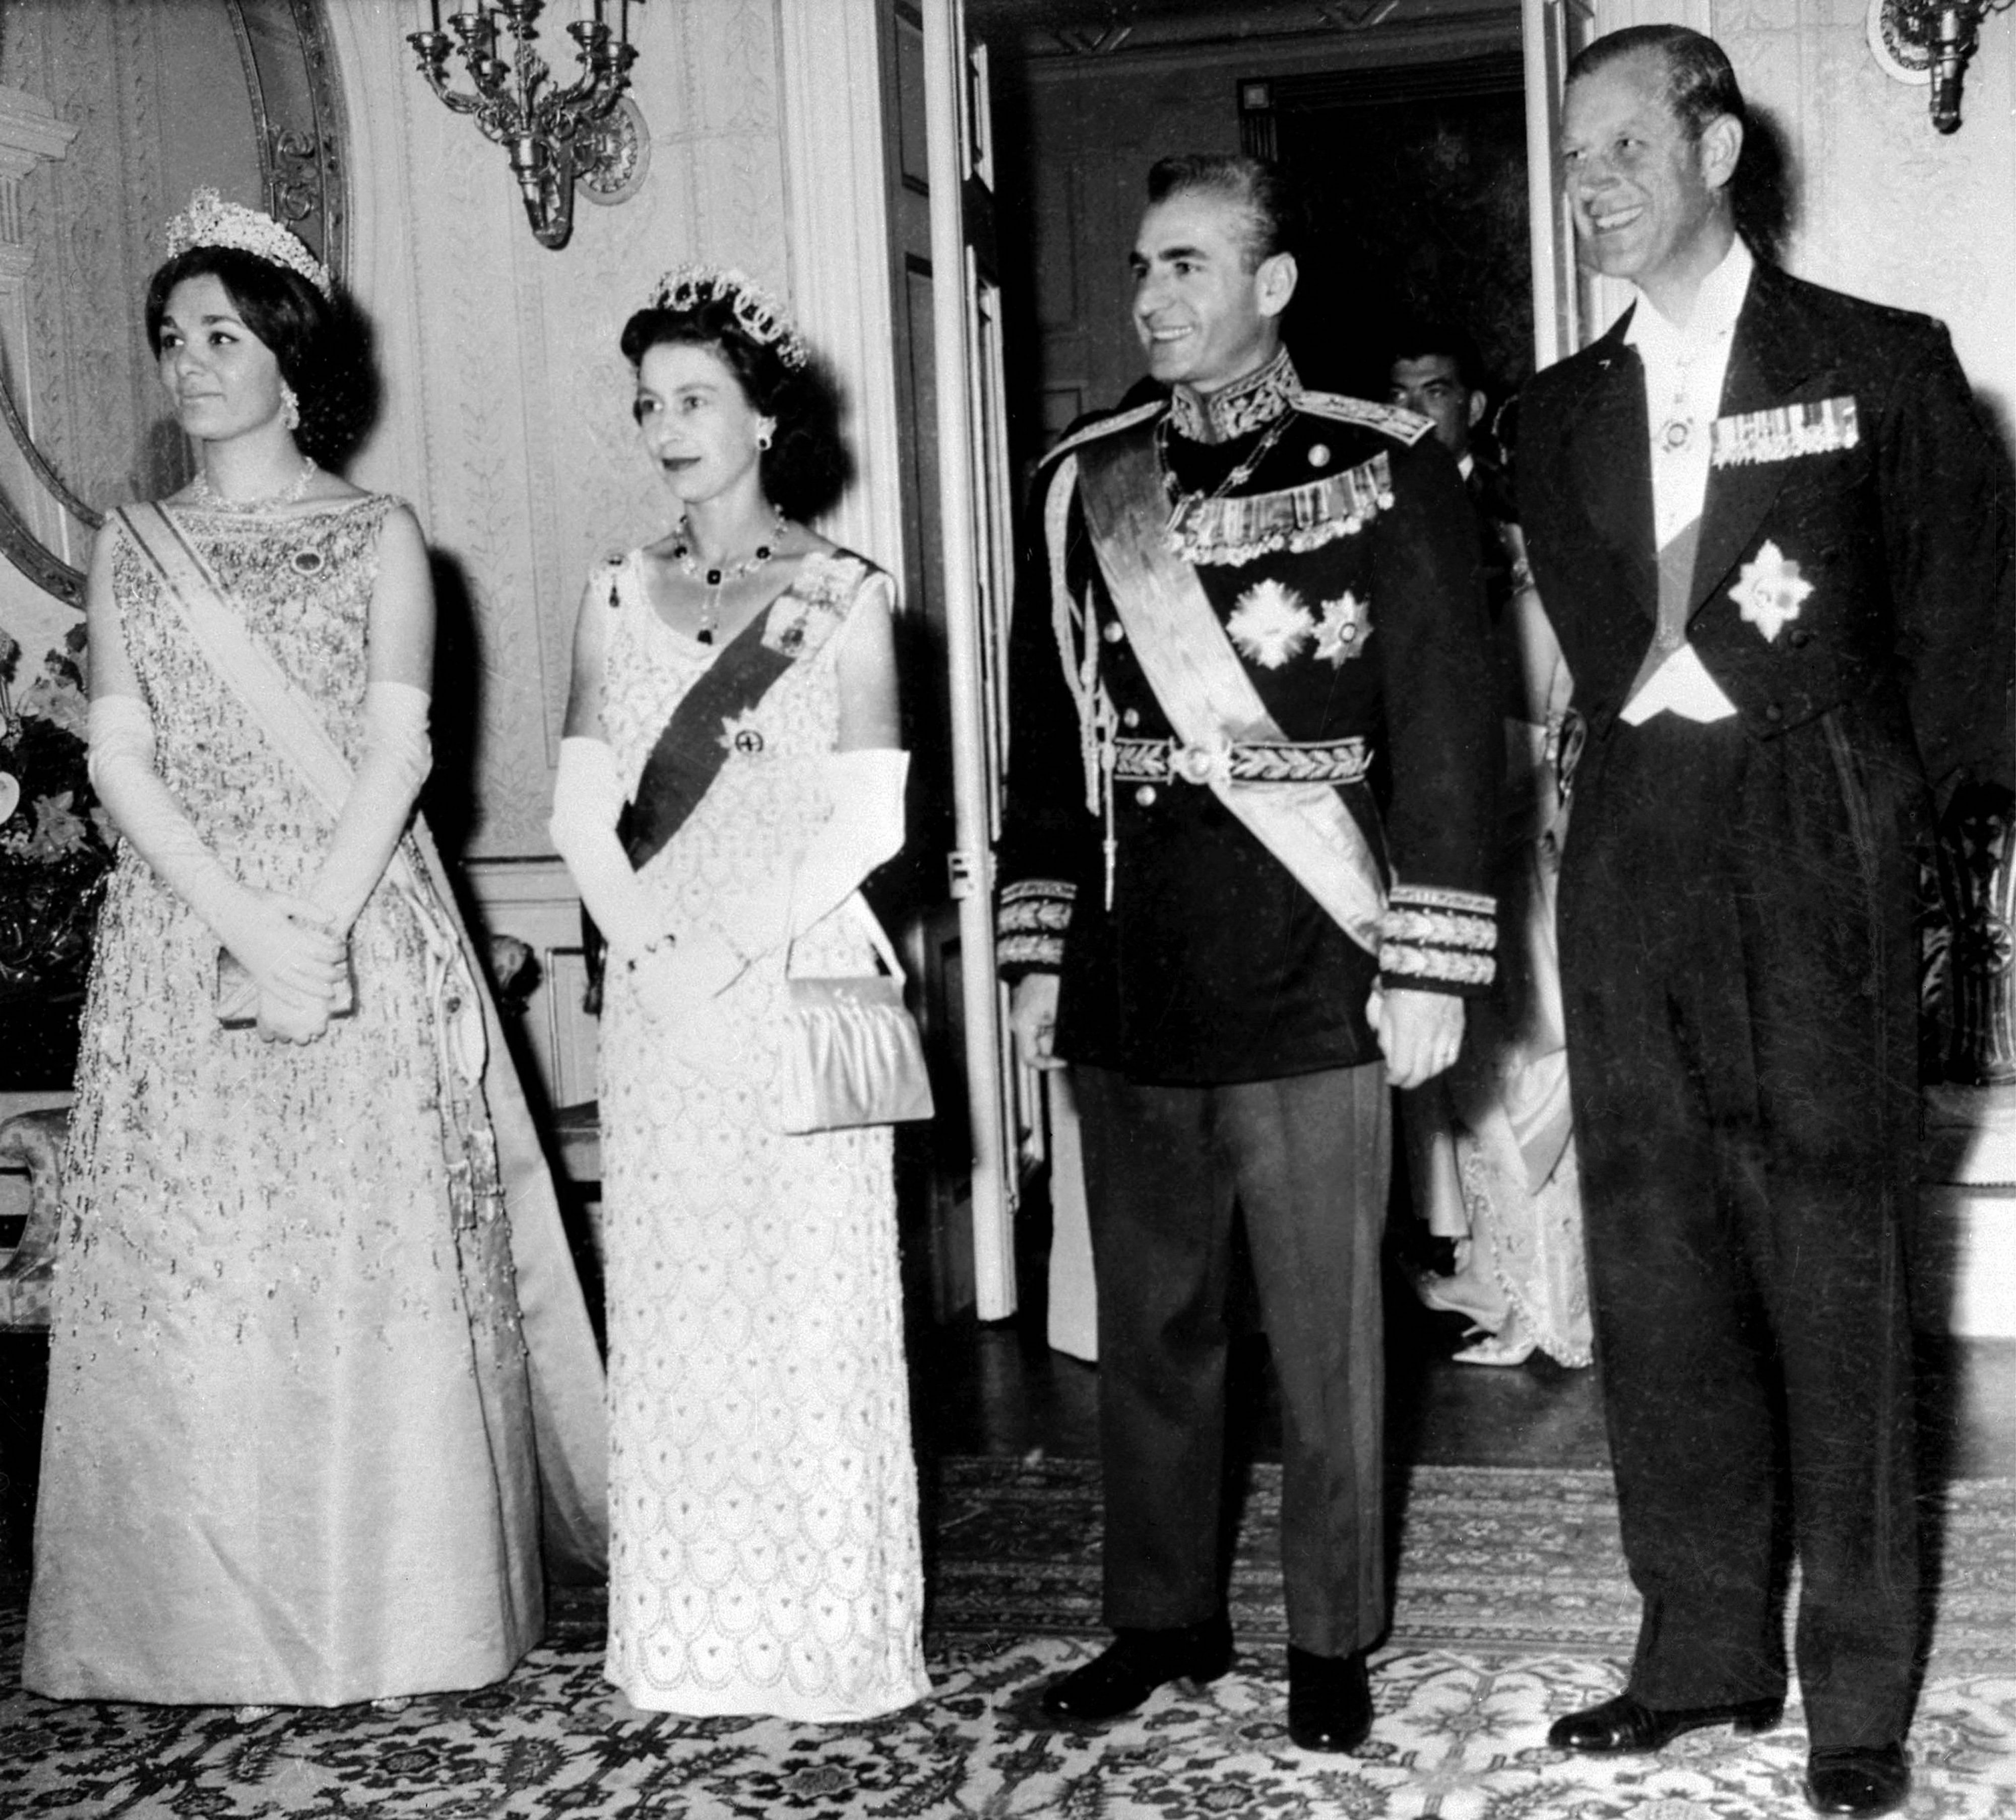 La reine Elizabeth II et le prince Philip posent avec le shah d’Iran Mohammad Reza Pahlavi et son épouse Farah Pahlavi lors de leur visite d’État à Téhéran en mars 1961 (AFP)